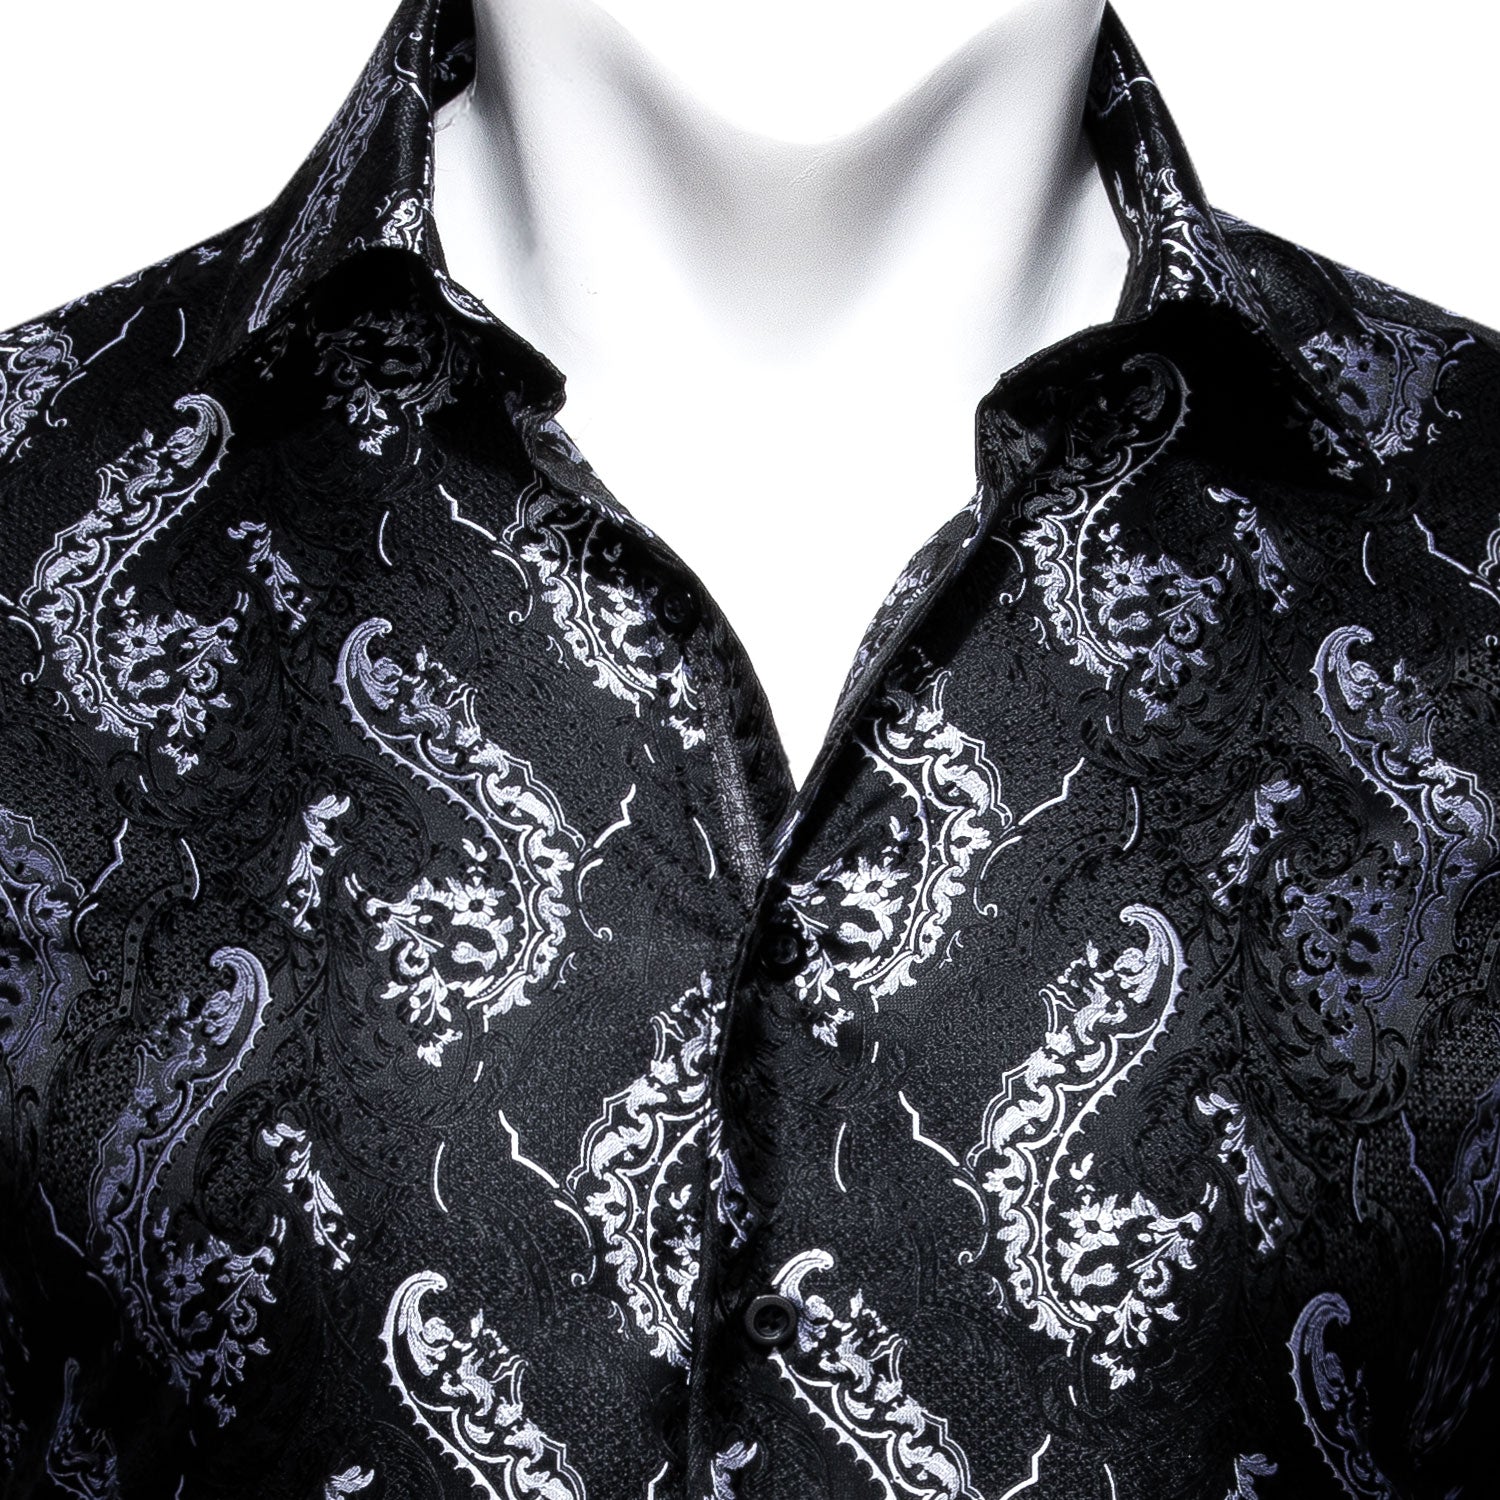 Barry.wang Black Floral Silk Men's Long Sleeve Shirt